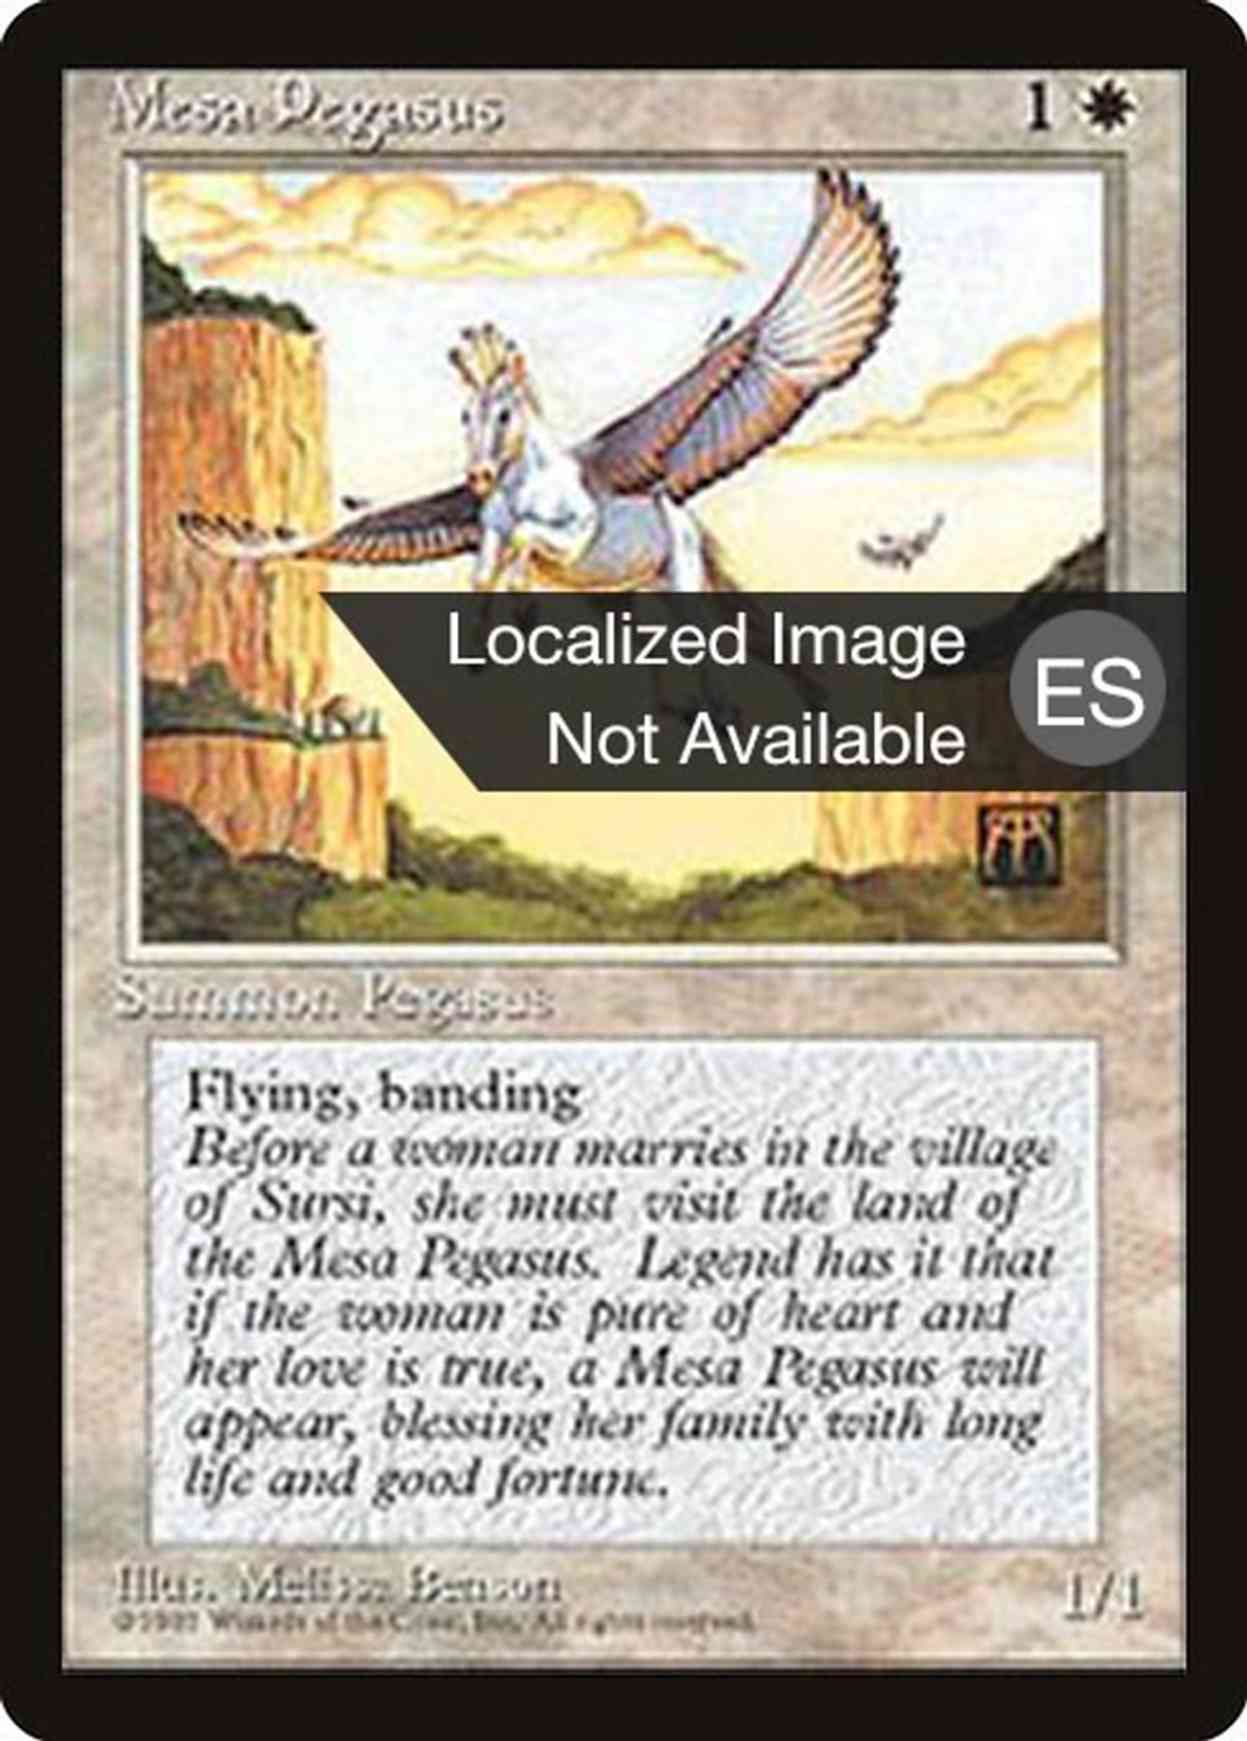 Mesa Pegasus magic card front